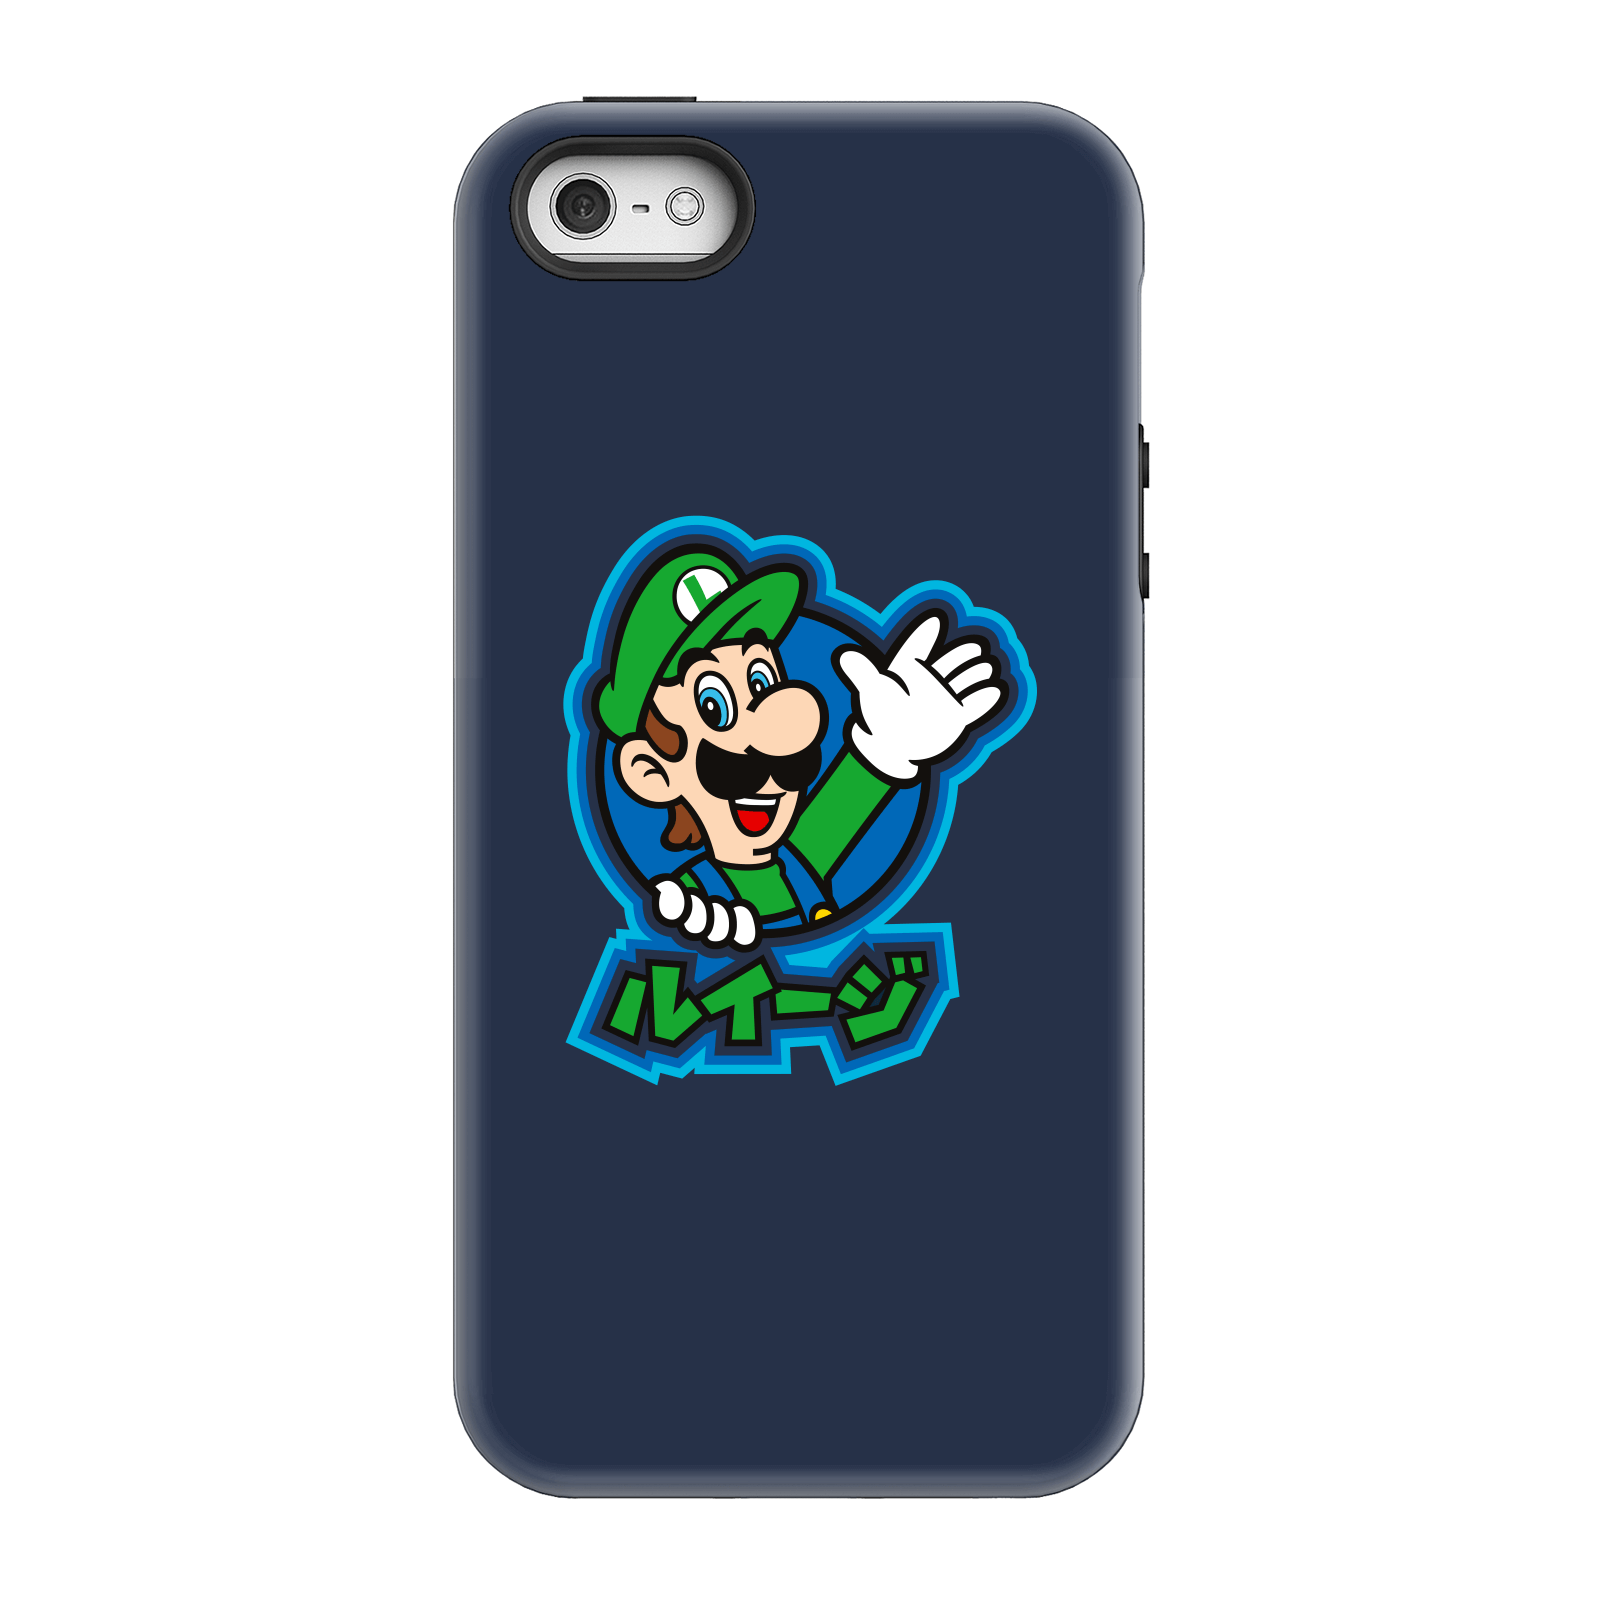 Nintendo Super Mario Luigi Kanji Phone Case - iPhone 5/5s - Tough Case - Gloss